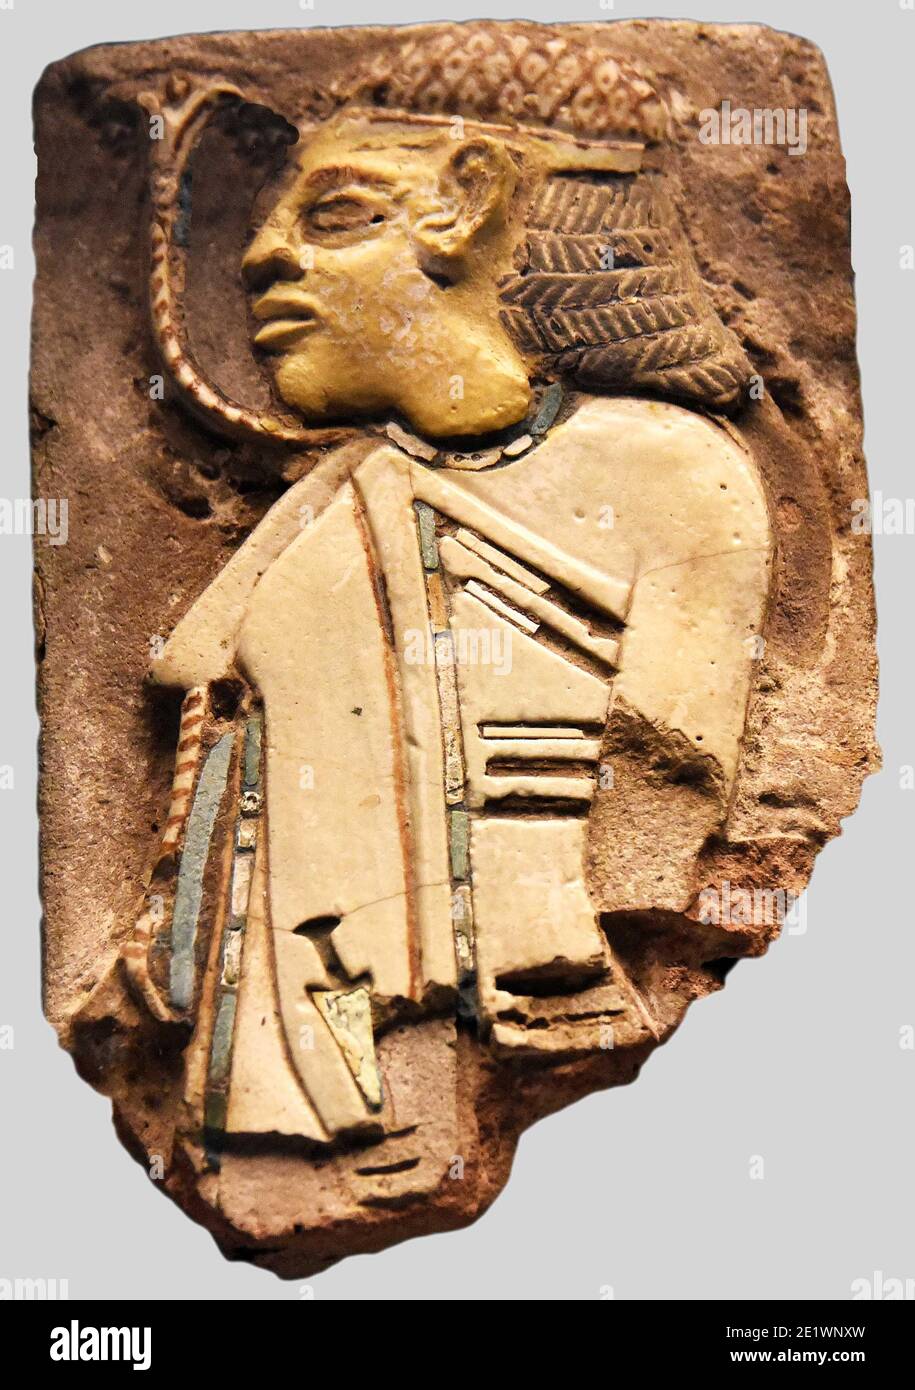 6714. Tuile représentant un prisonnier asiatique, datant c. 12. C.-B.. Du palais du roi Ramsès III à Tell e-Yehudieh, Égypte. Banque D'Images